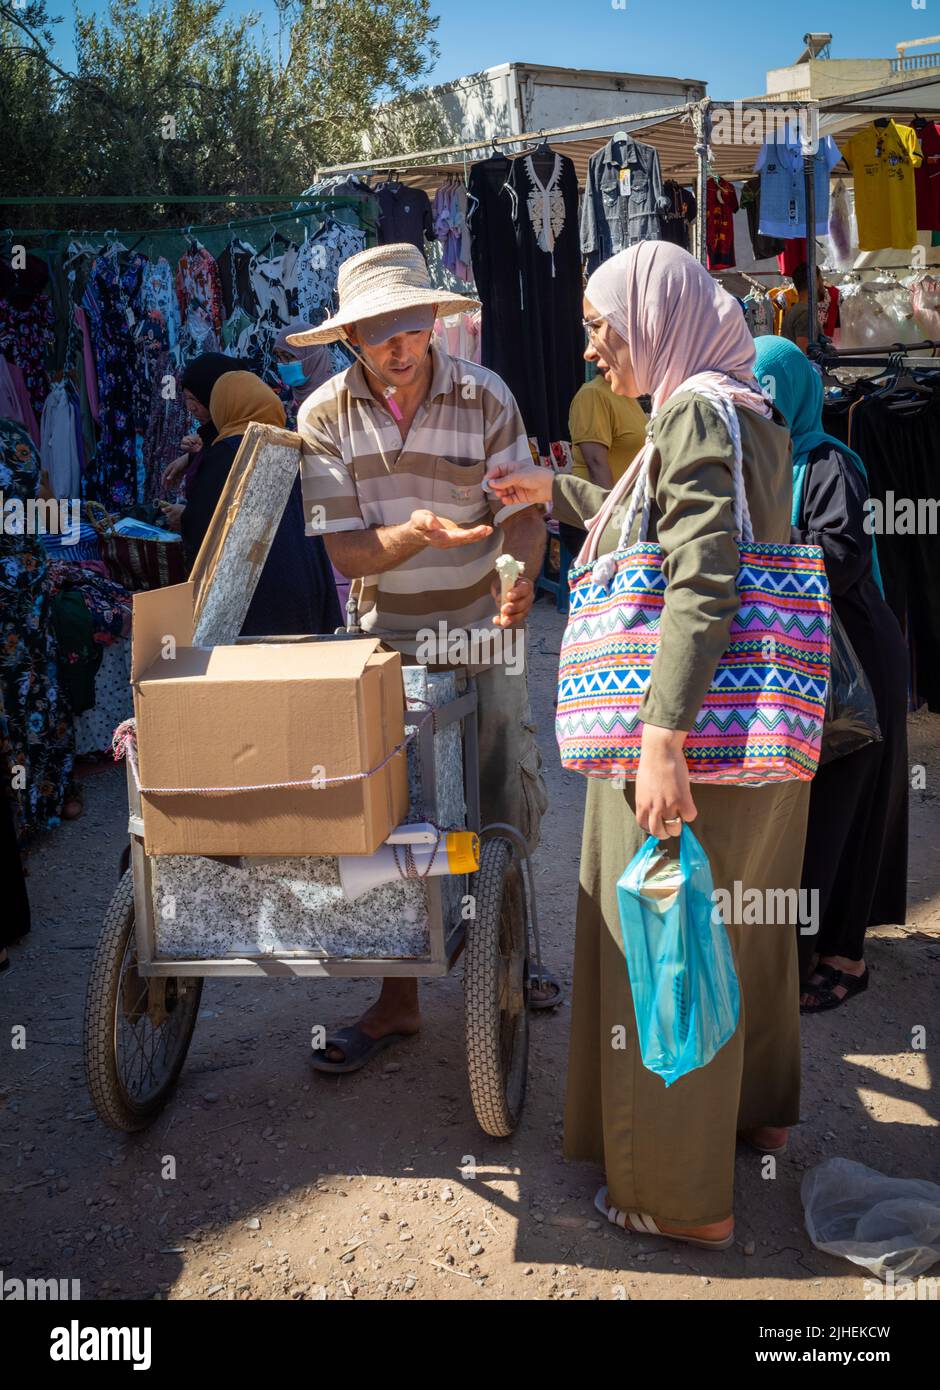 Une femme achète une glace à un vendeur du Sunday Souk, un marché hebdomadaire à Sousse, en Tunisie. Banque D'Images